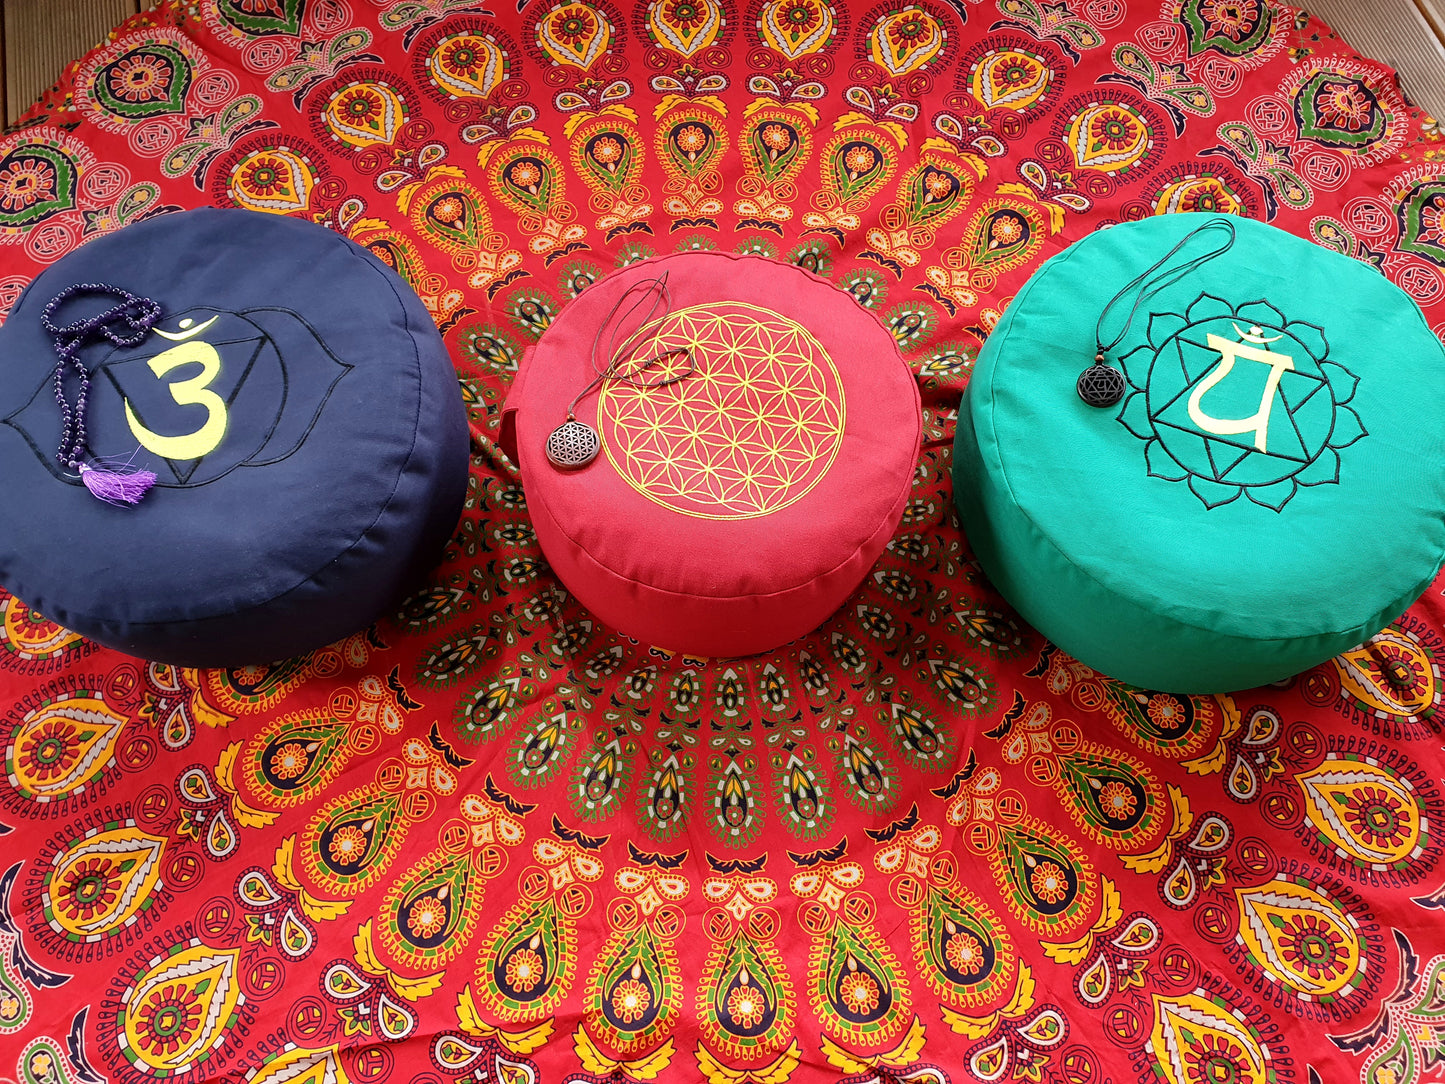 Stirnchakra Meditationskissen mit Buchweizen gefüllt 36 x 15cm Blau